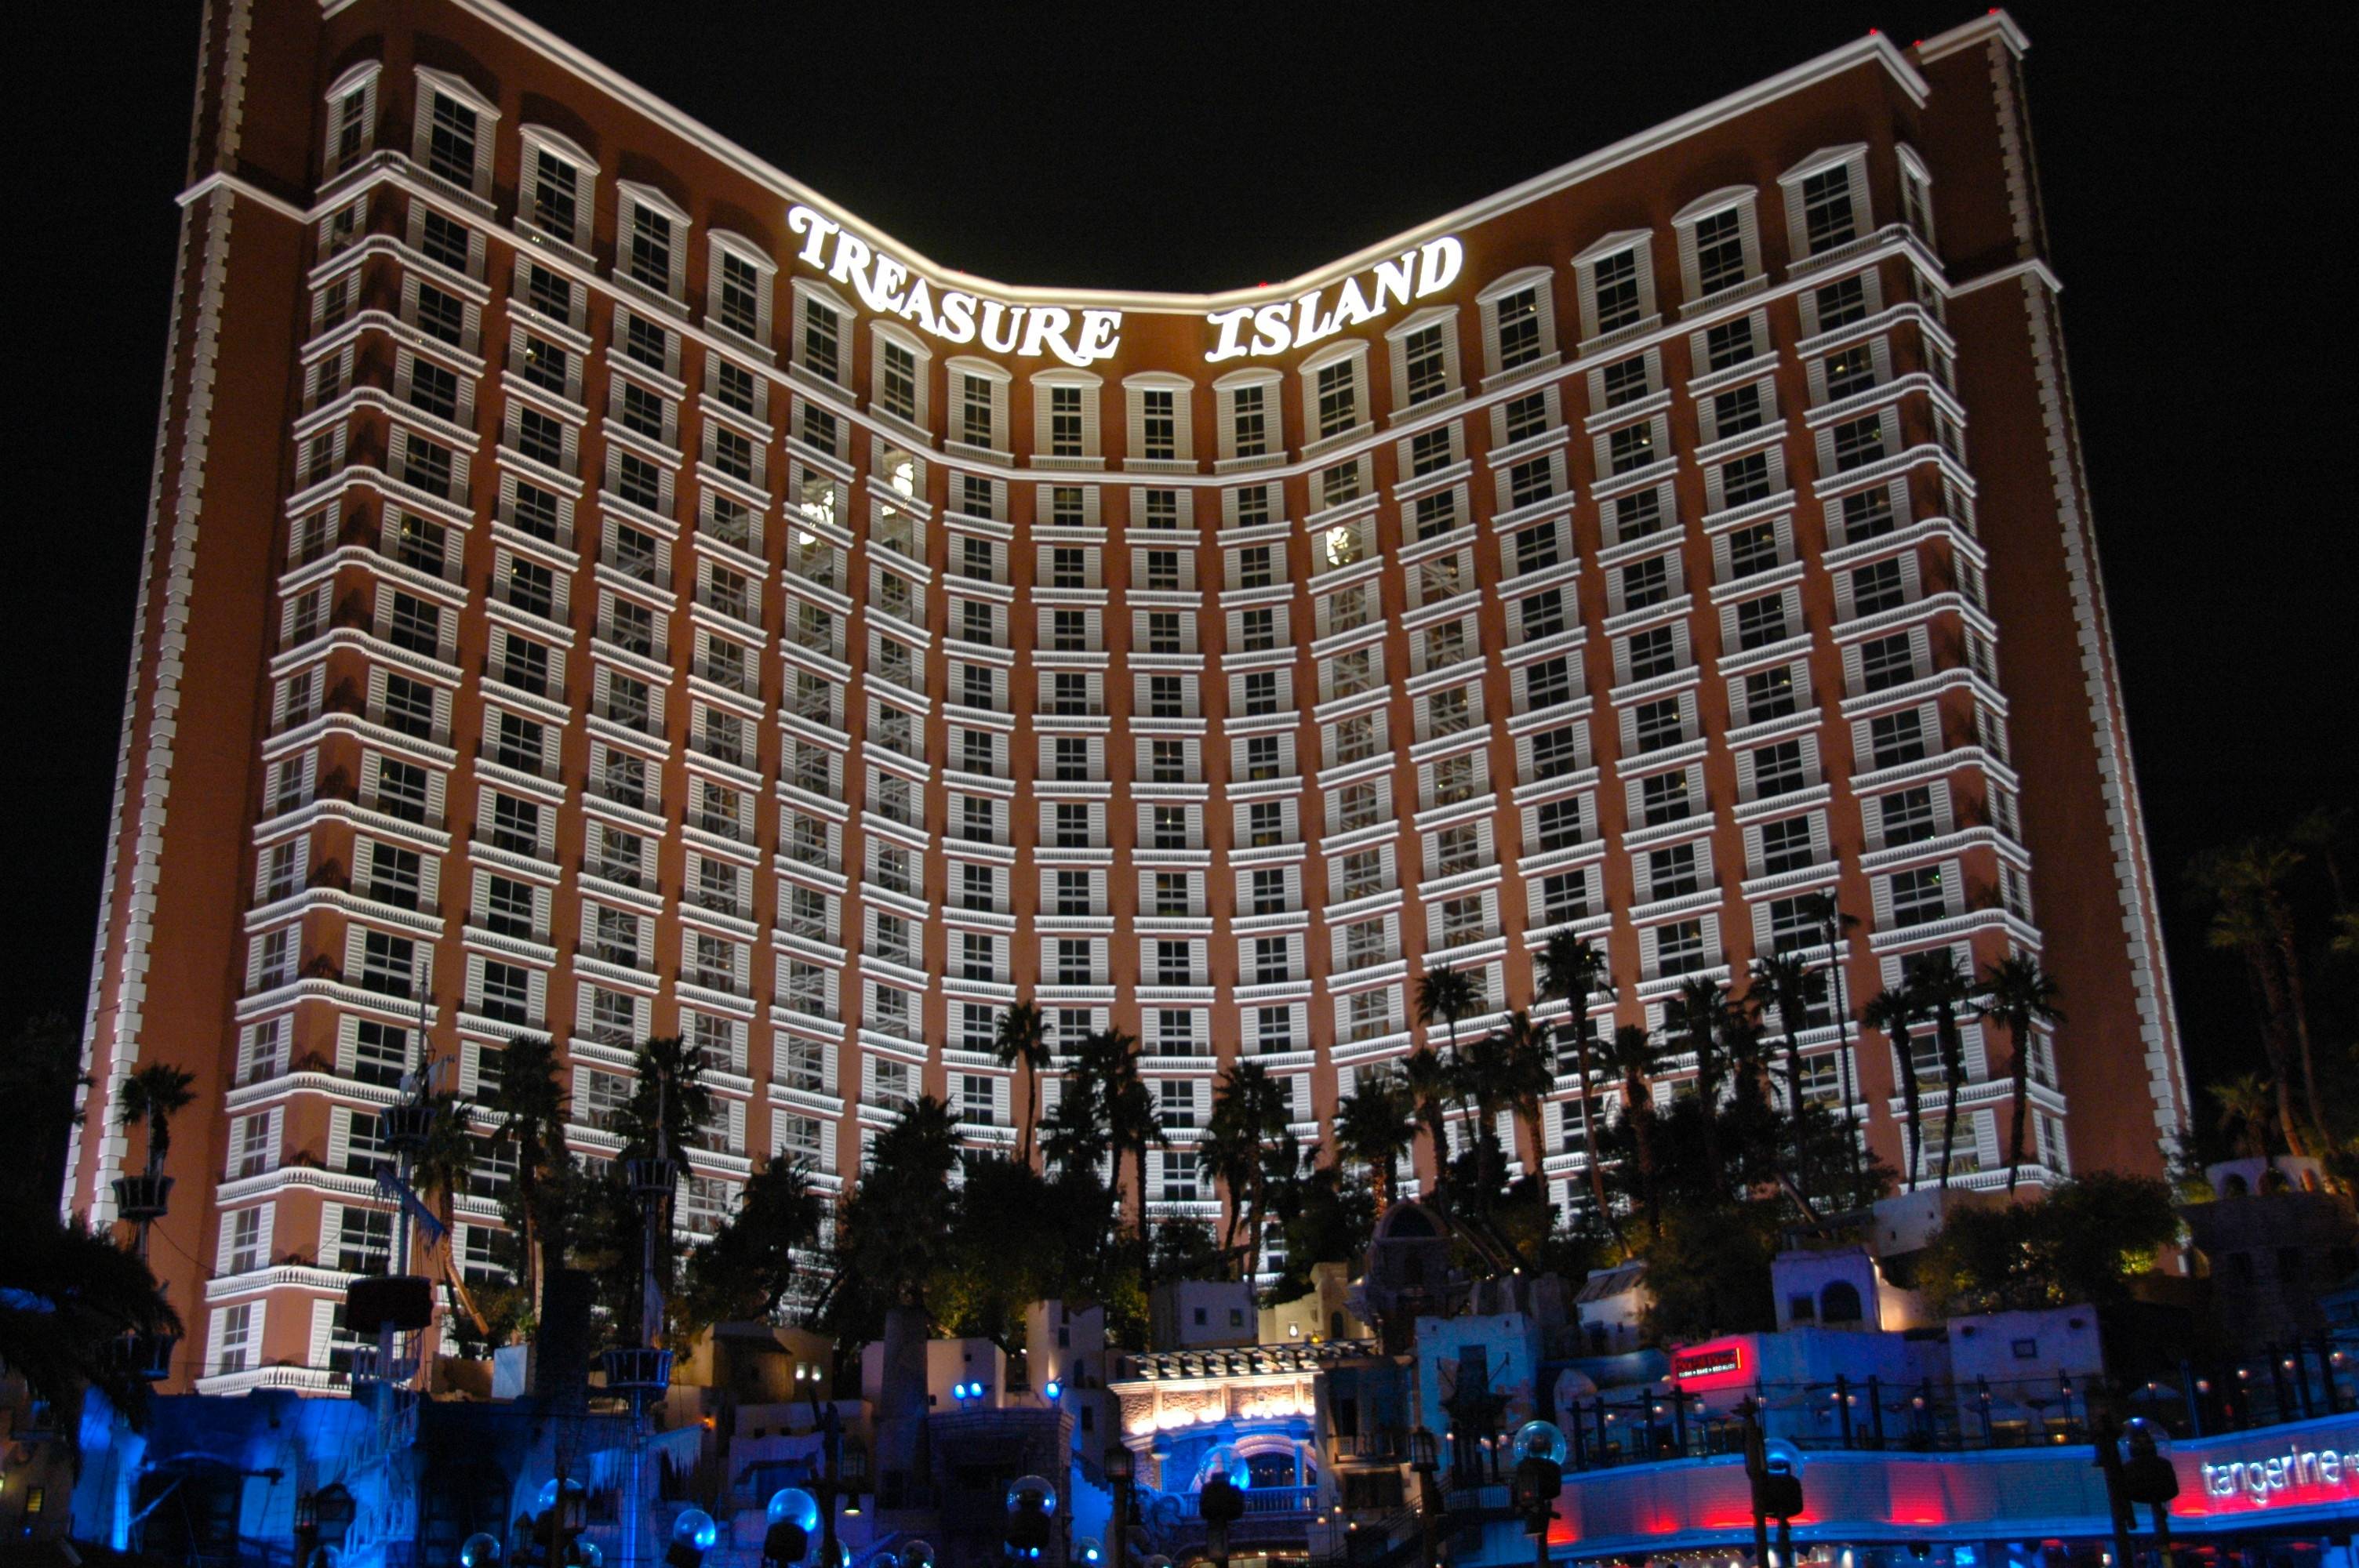 Treasure Island Casino Las Vegas